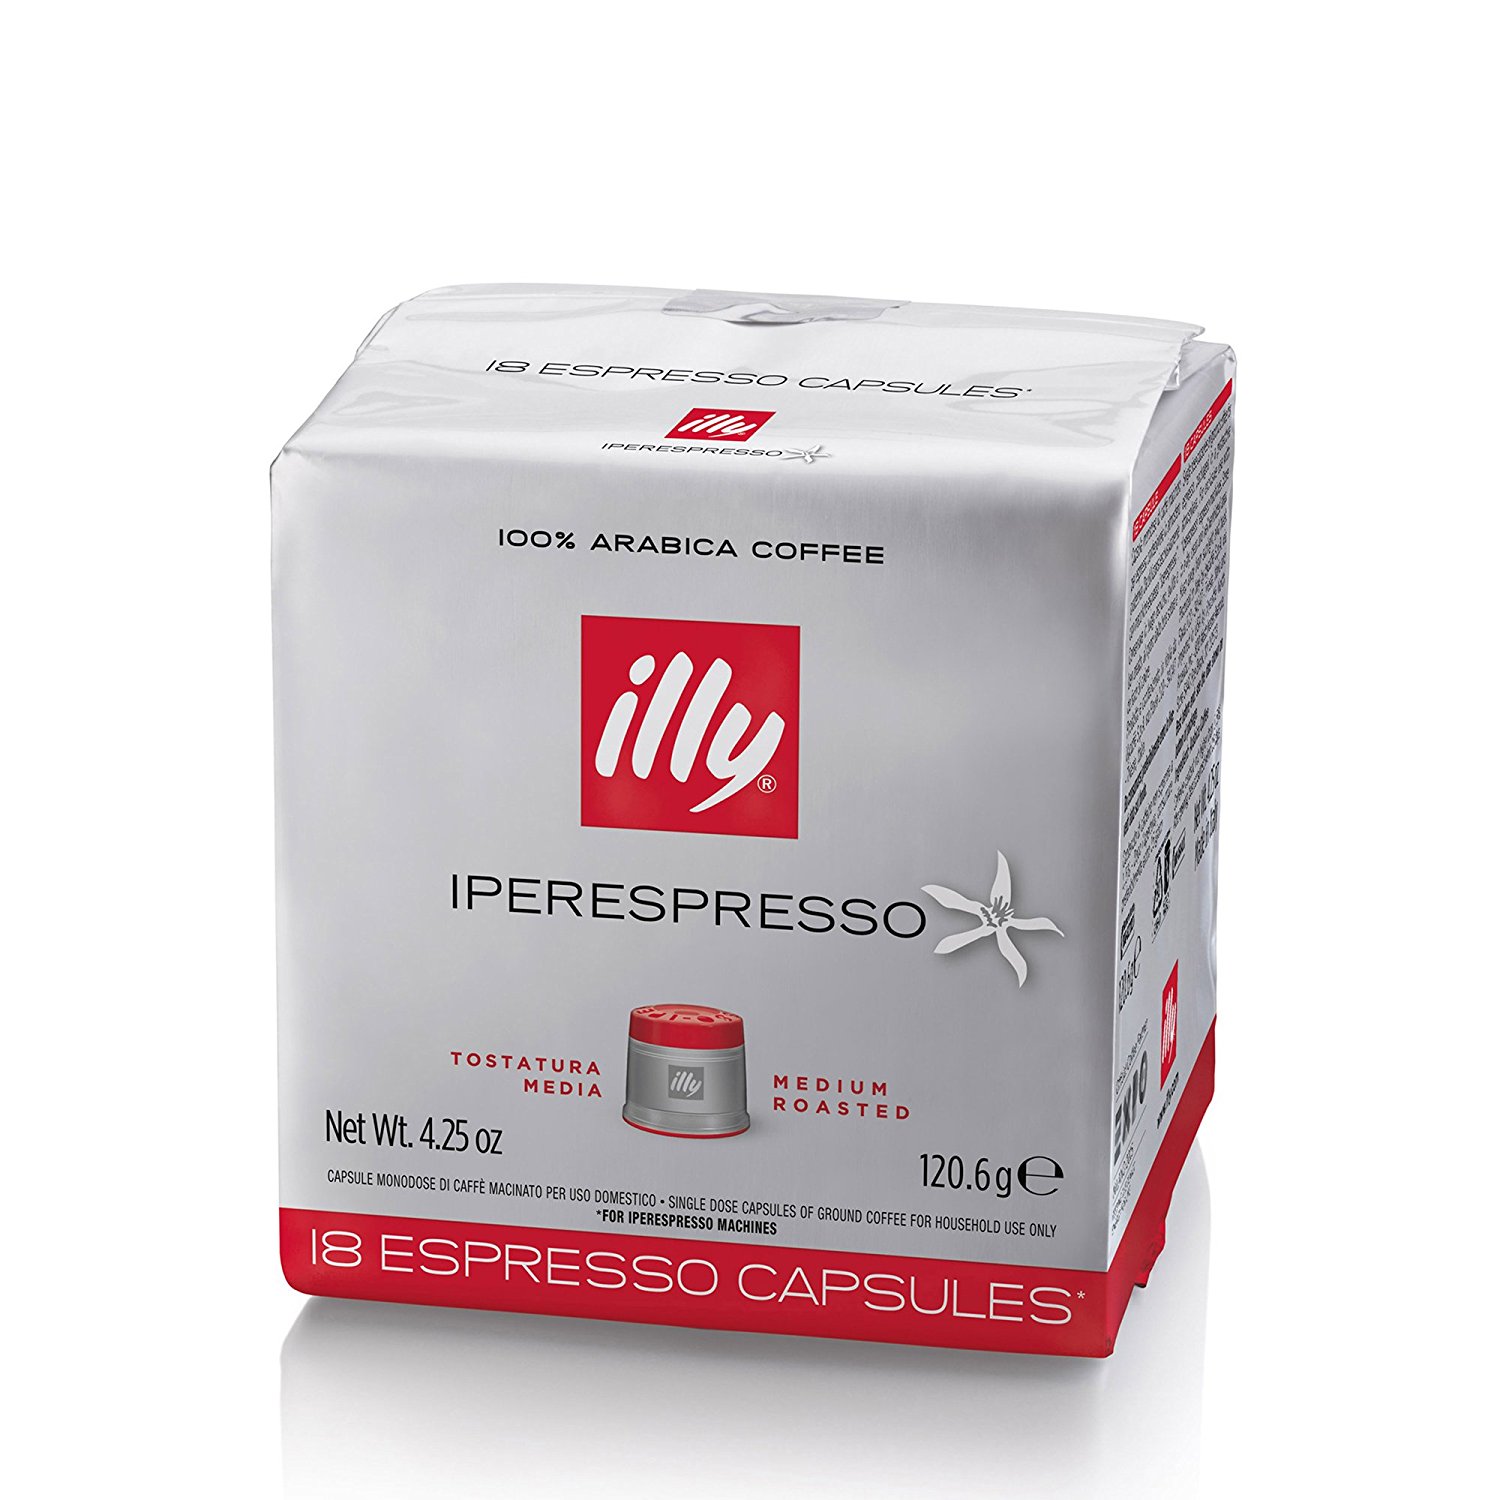 Tostatura Media - Capsule originali per Illy Iperesspresso